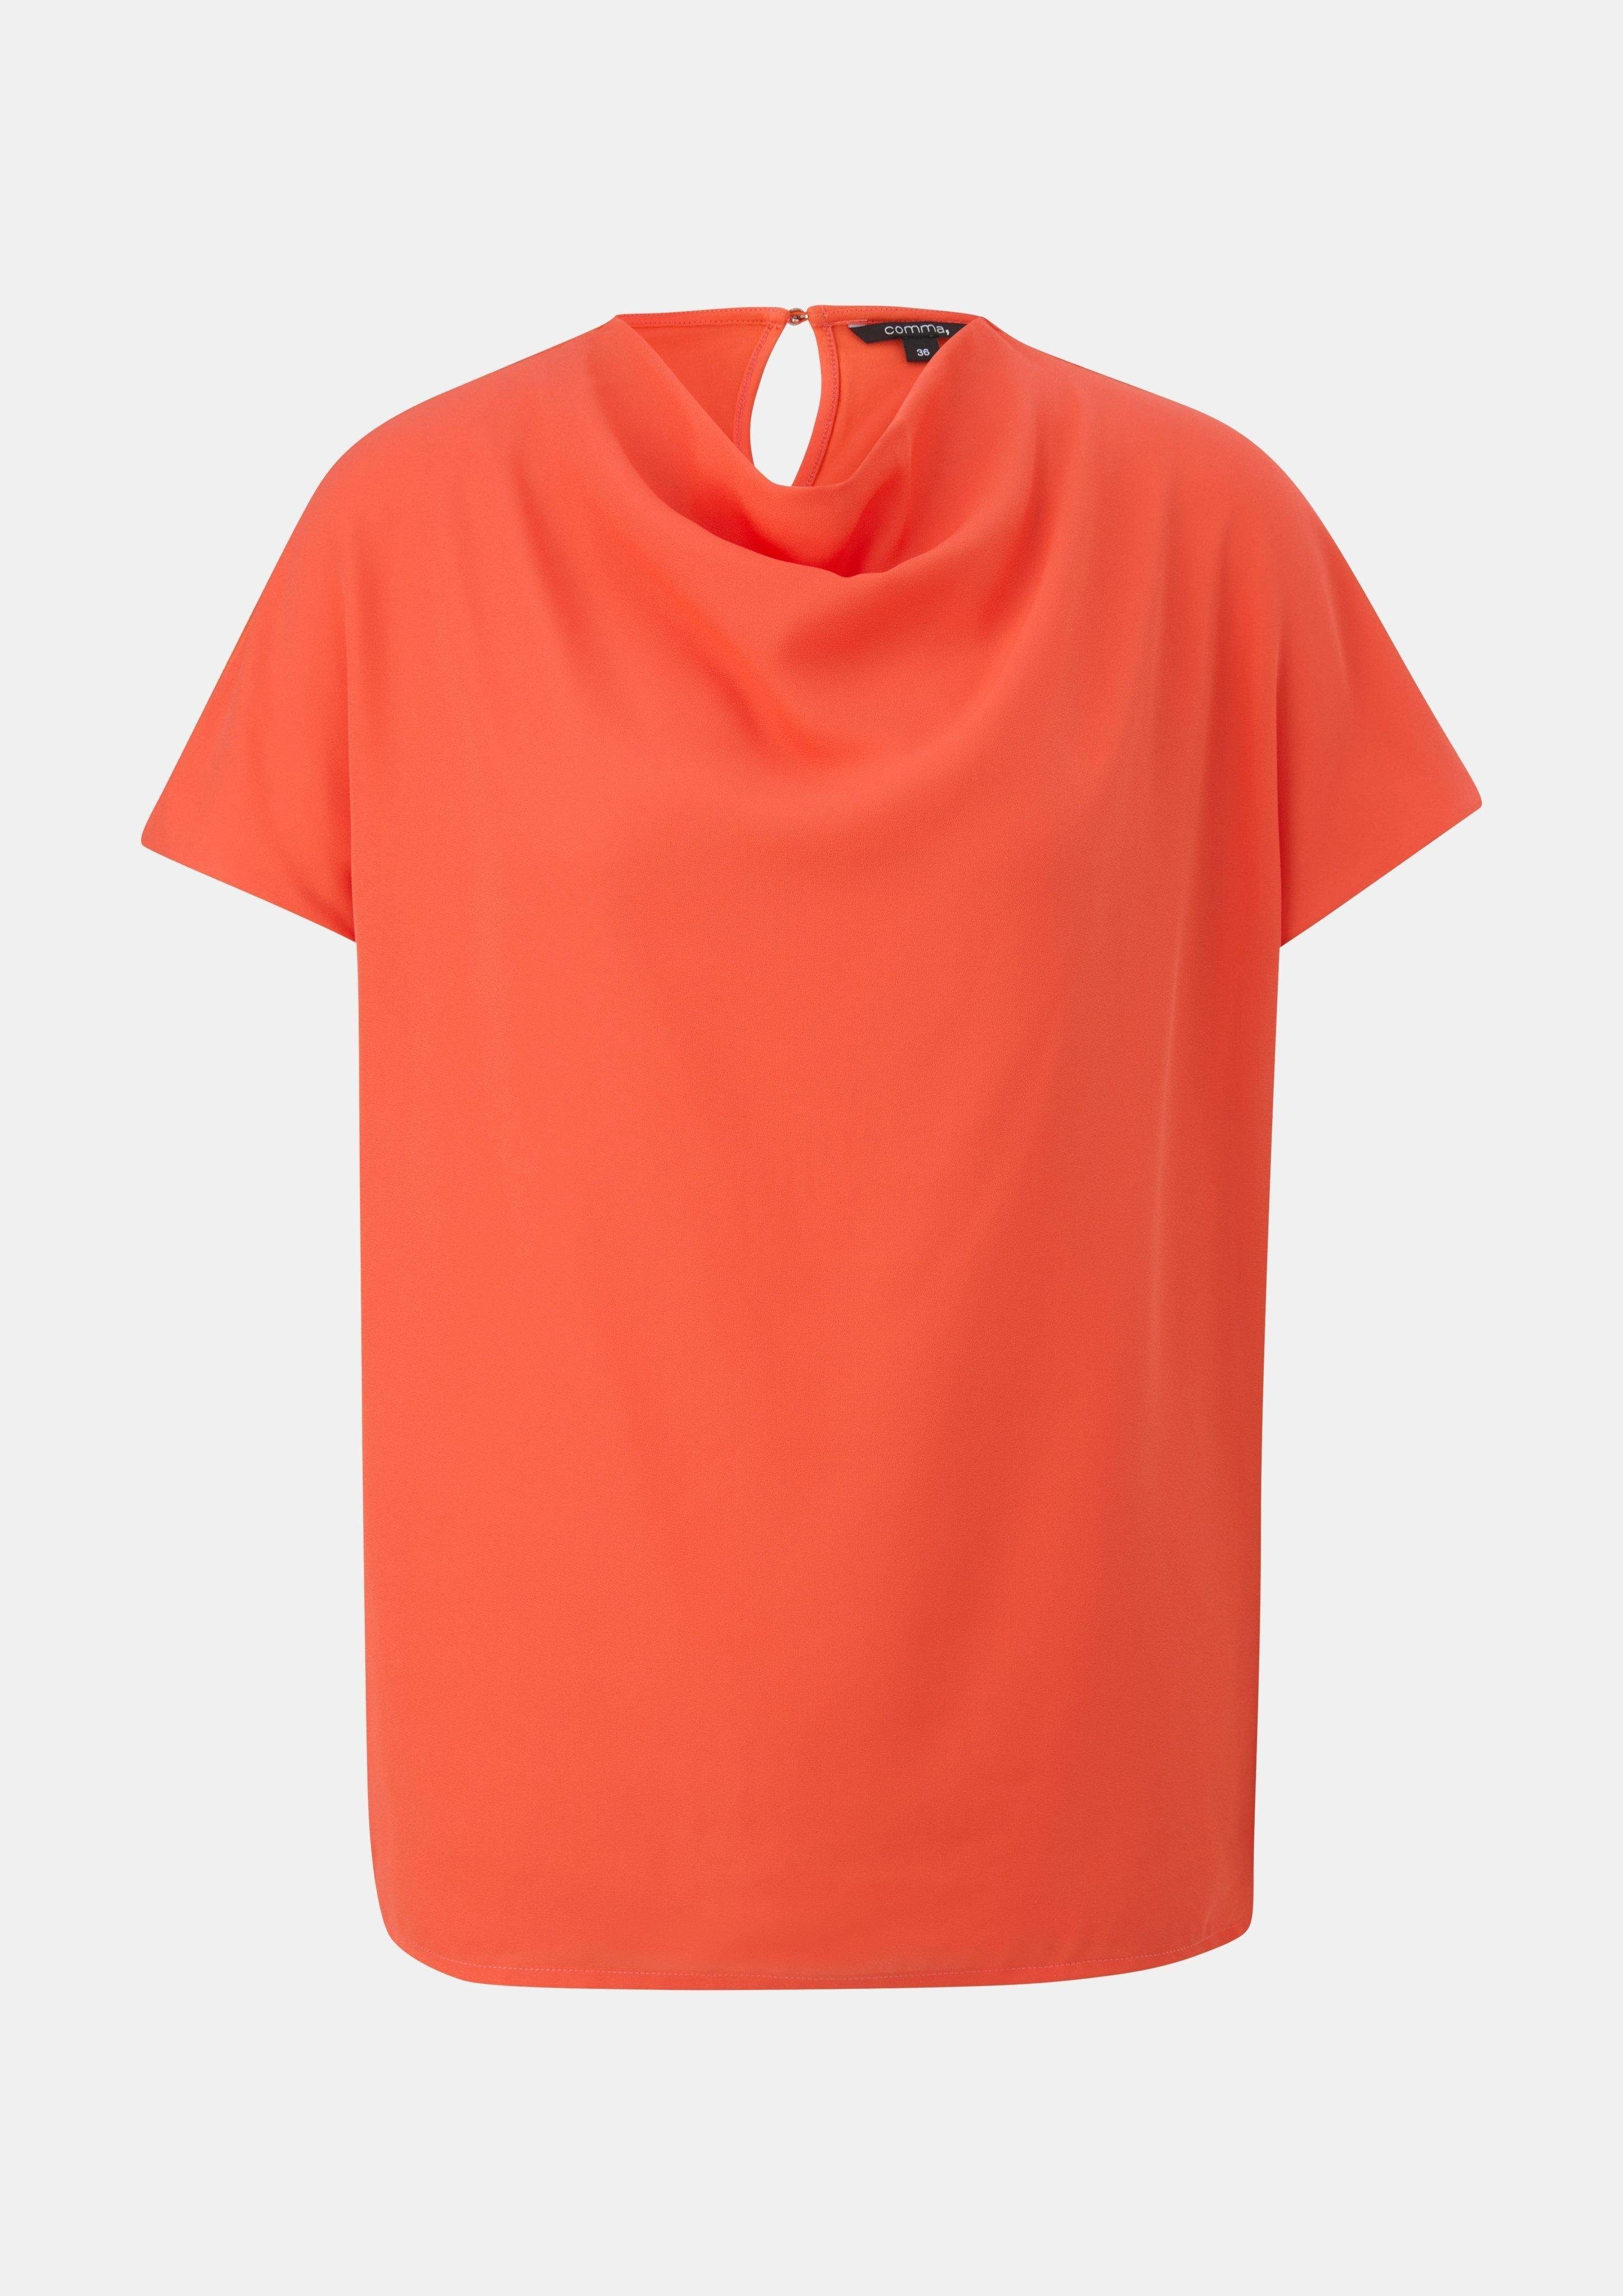 Kurzarmshirt Fabricmix orange im Blusenshirt Comma